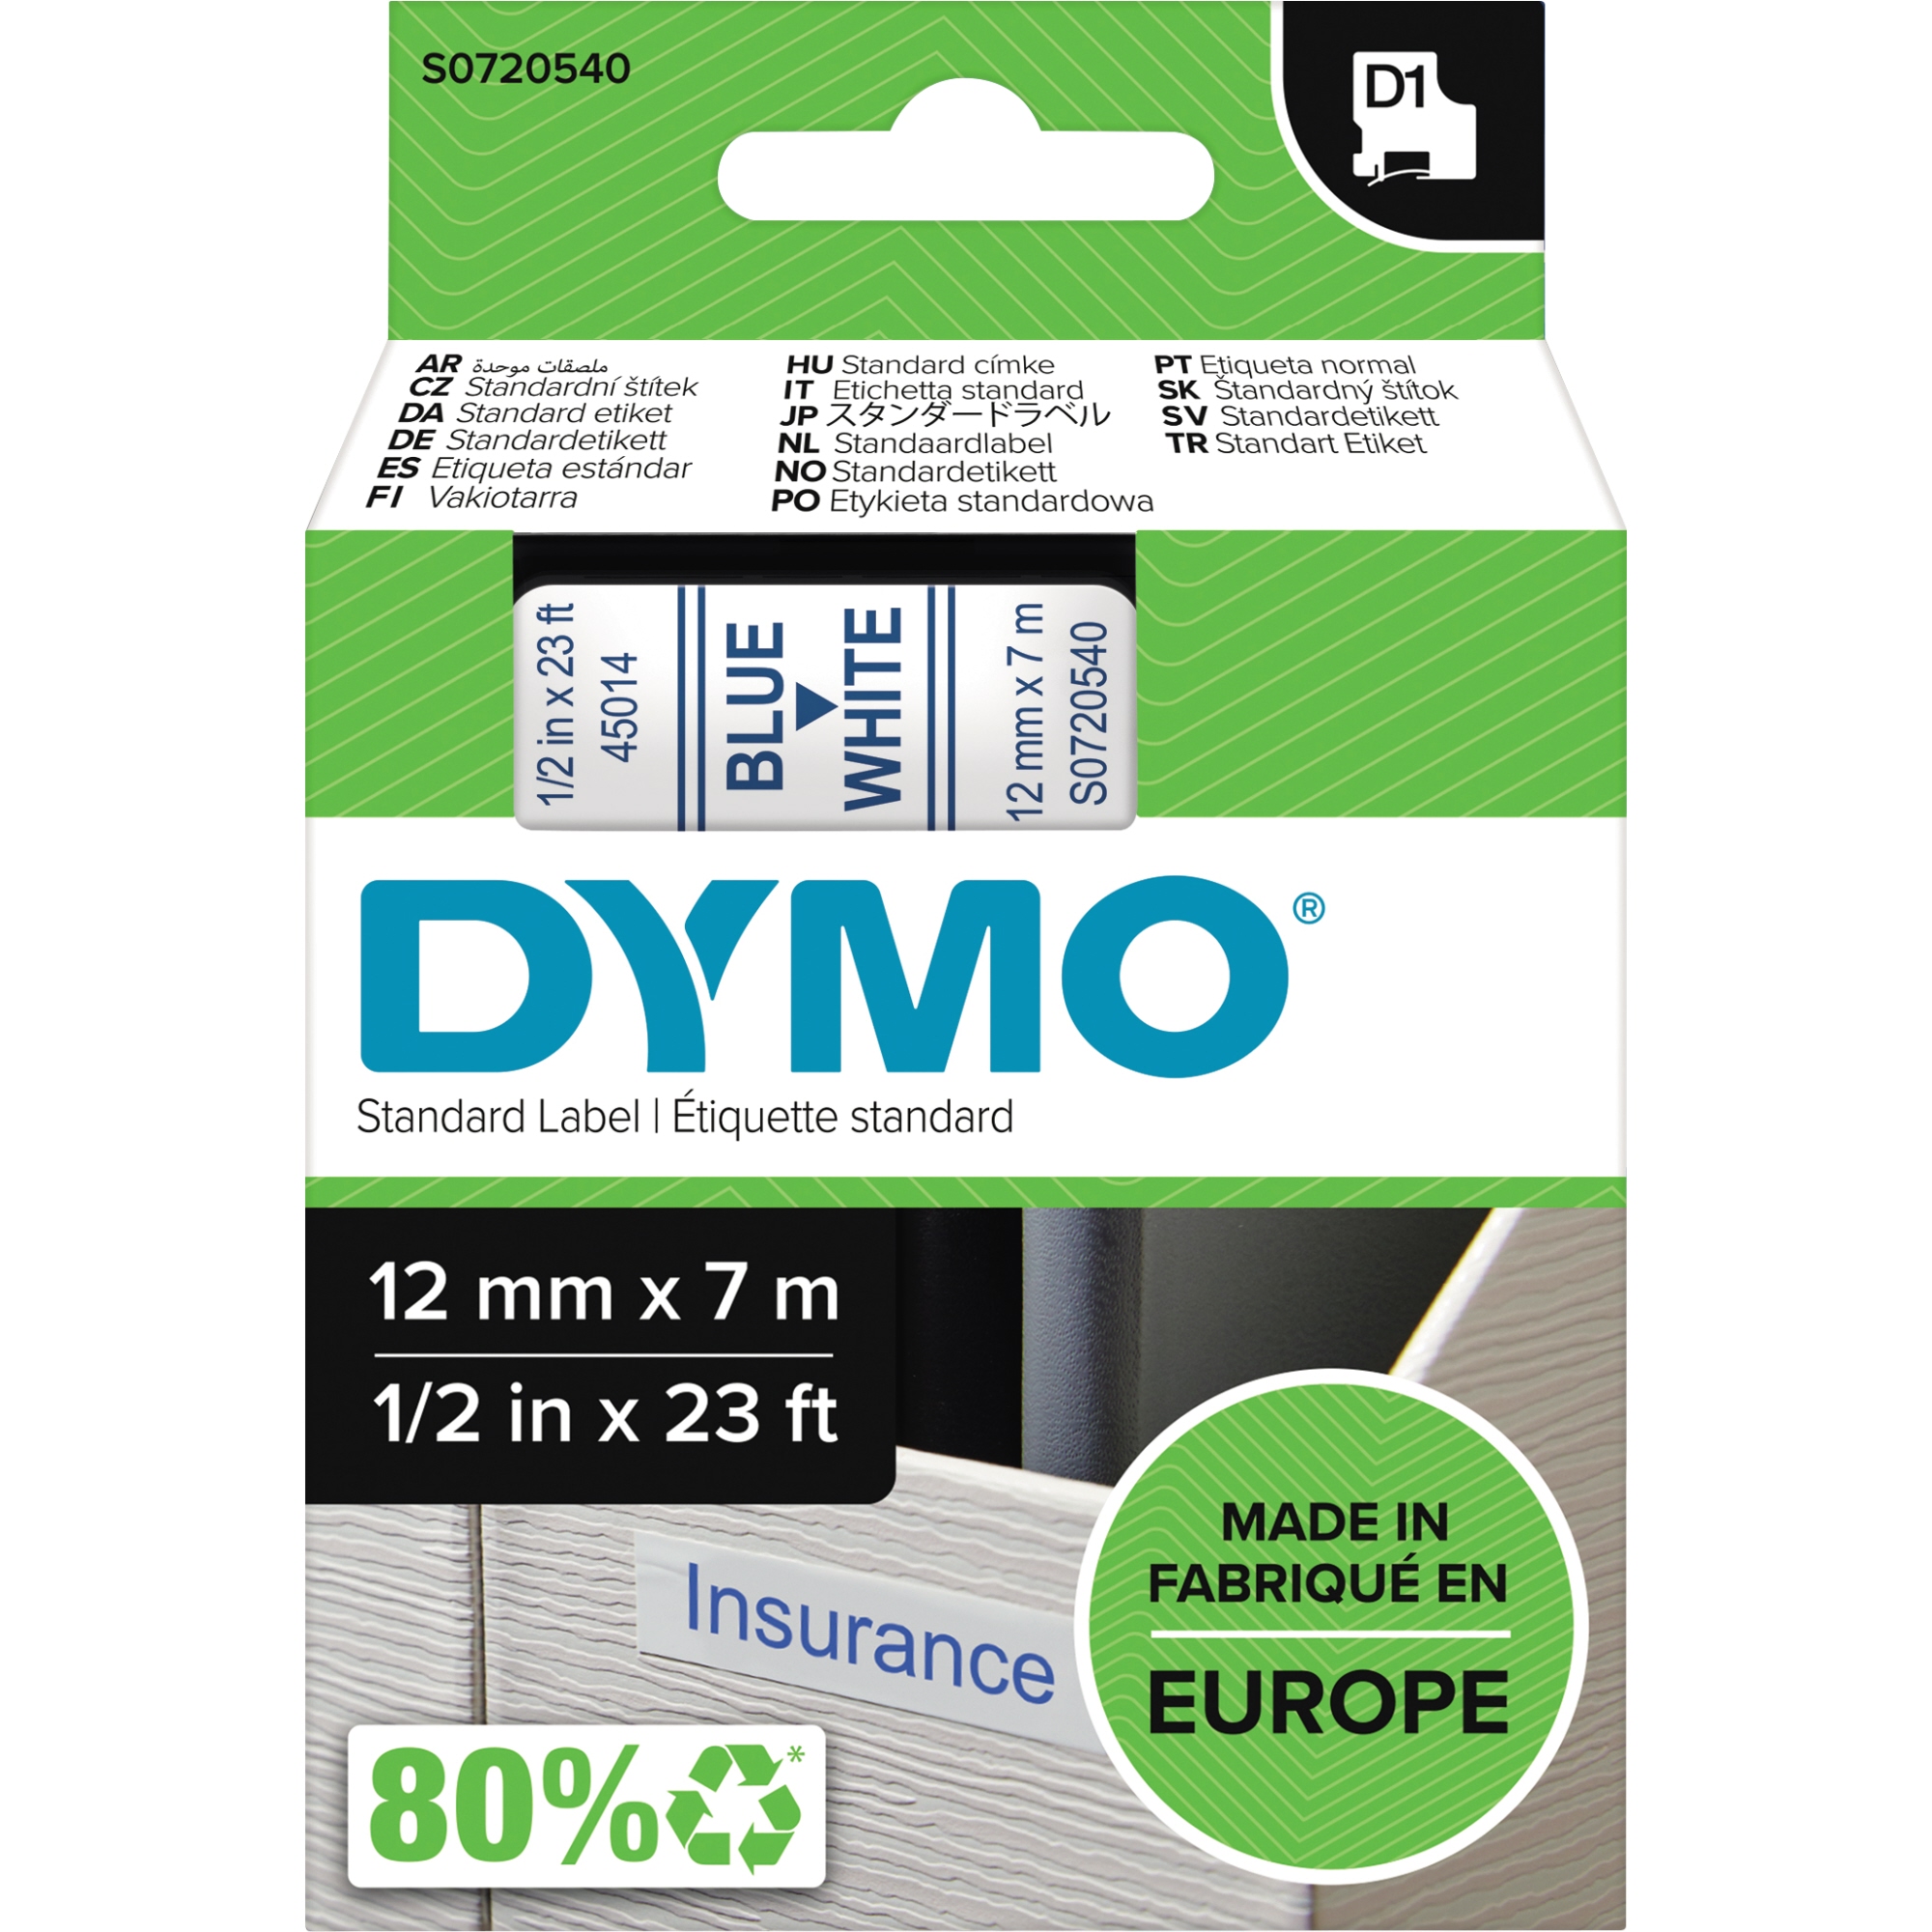 DYMO® Schriftbandkassette D1 12 mm blau auf weiß